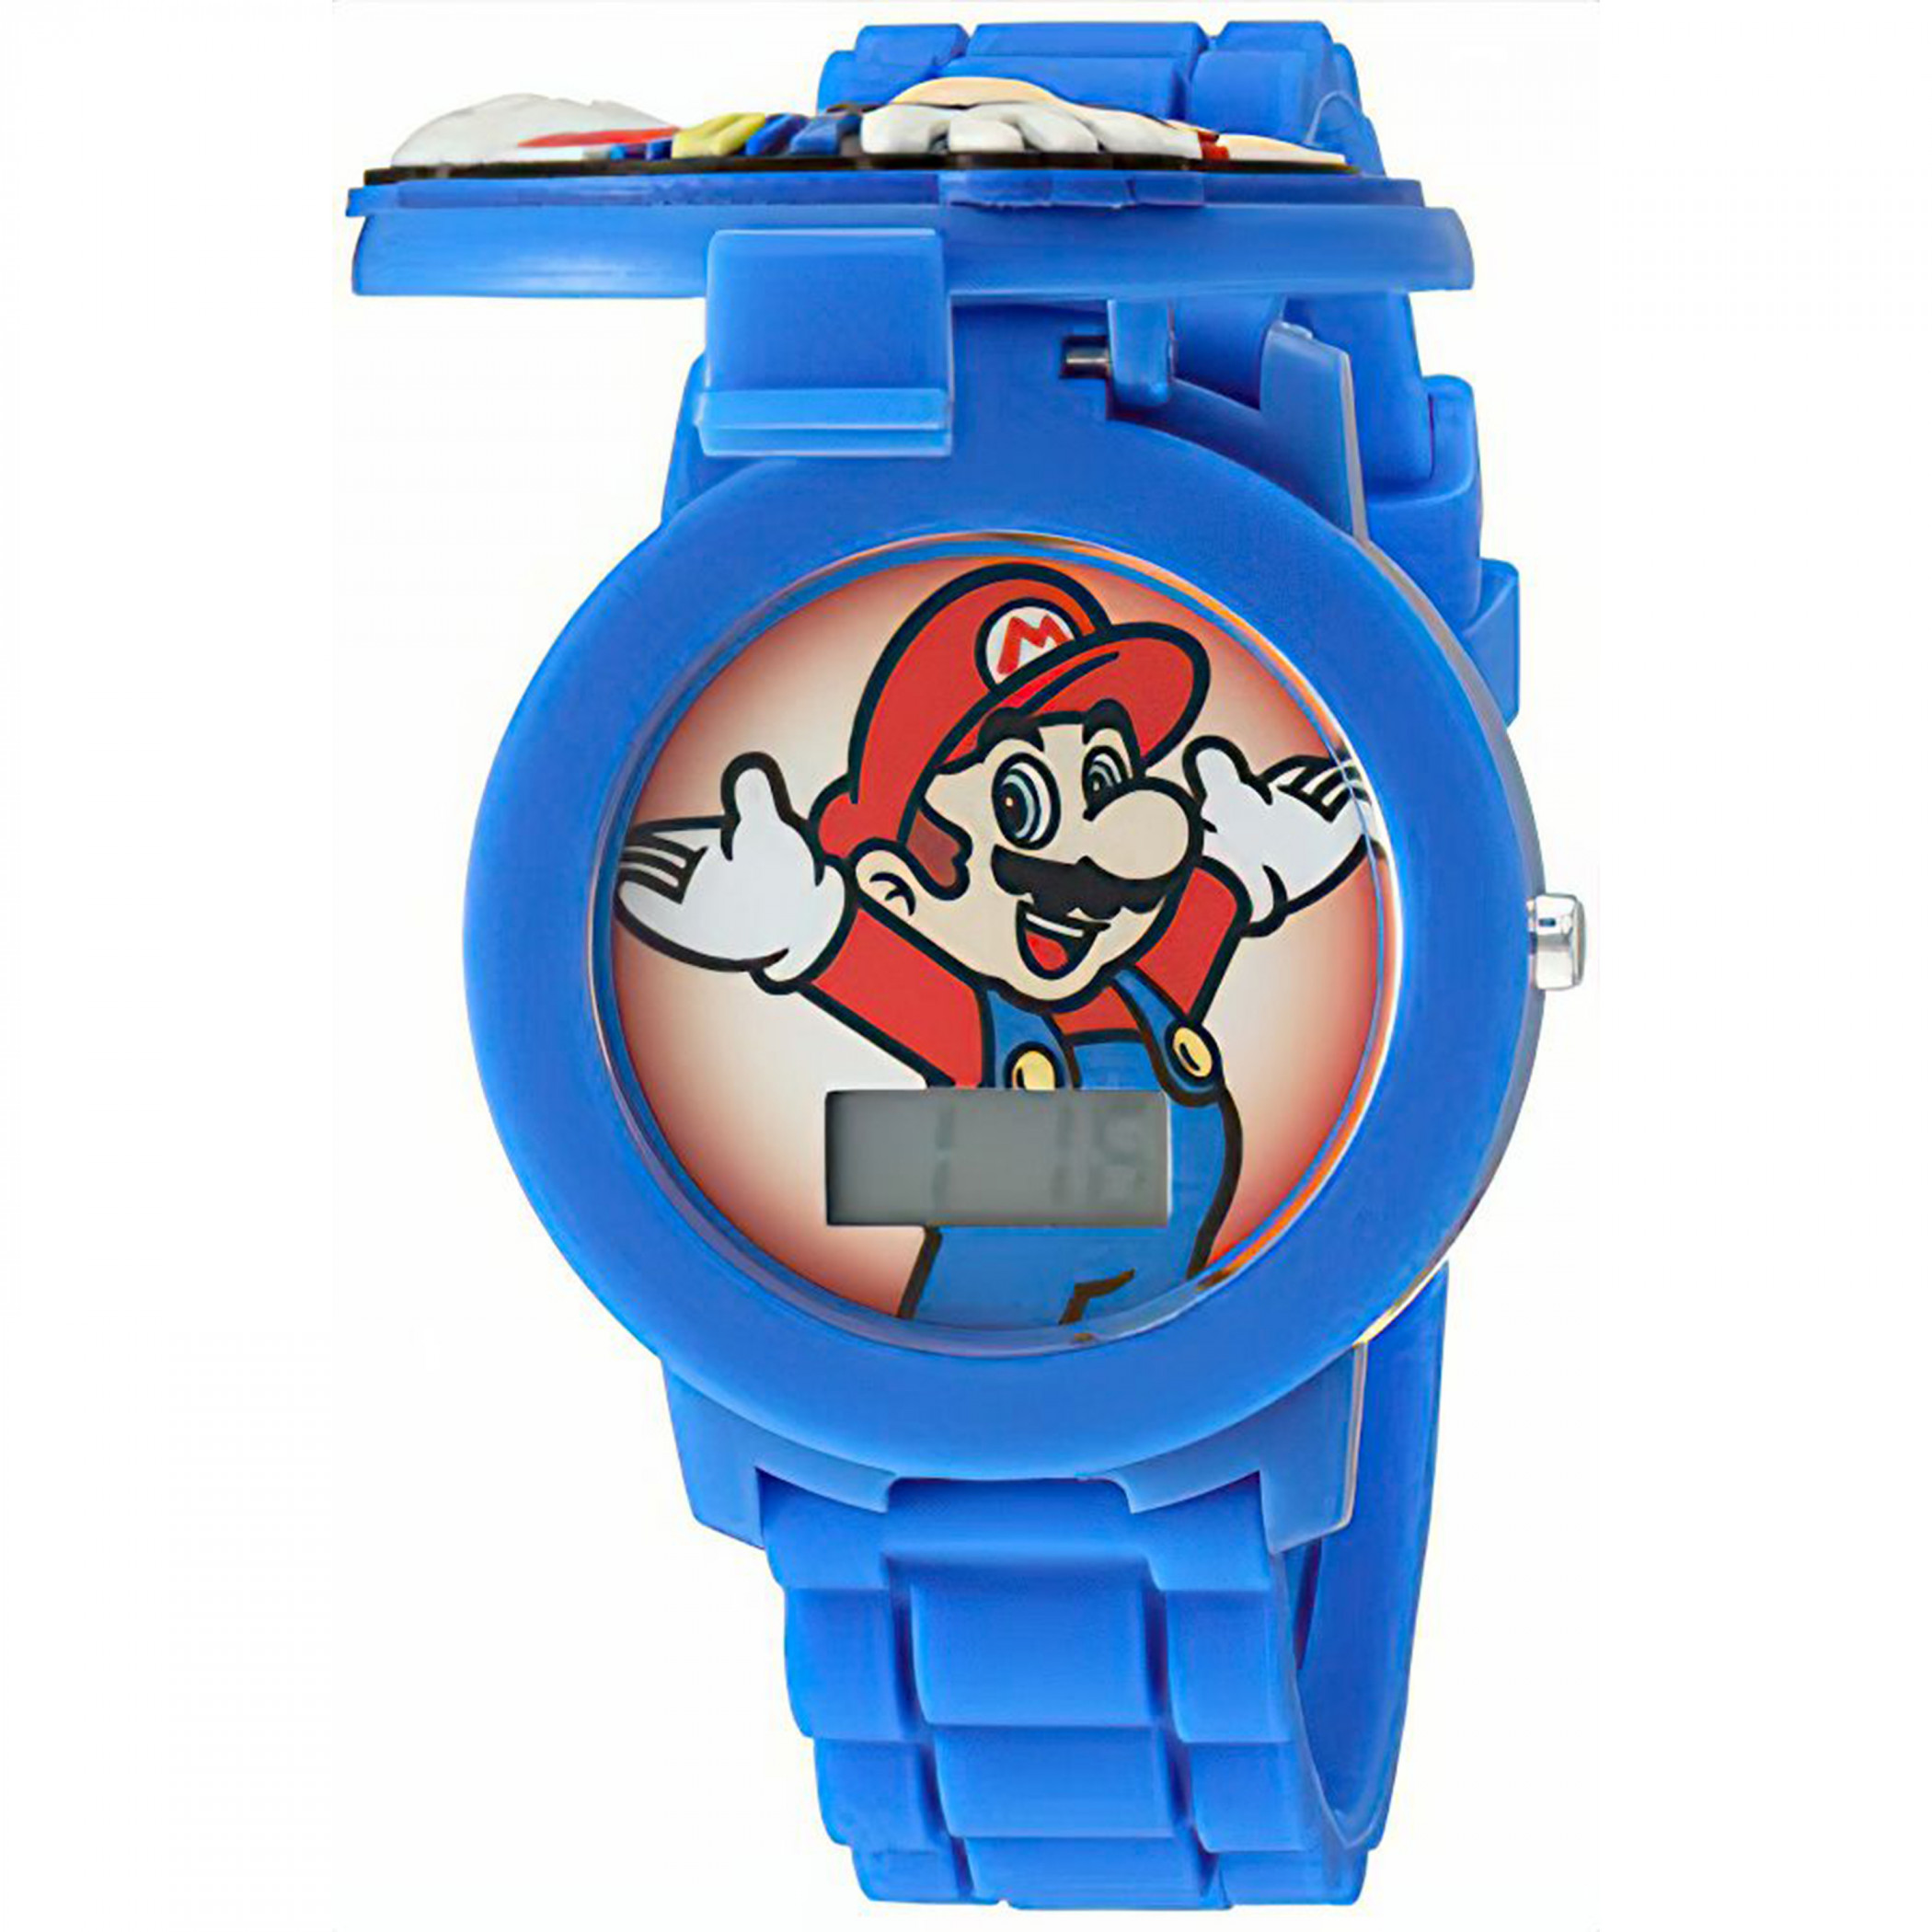 Super Mario Bros. Kid's Watch with 3D Mario Cover